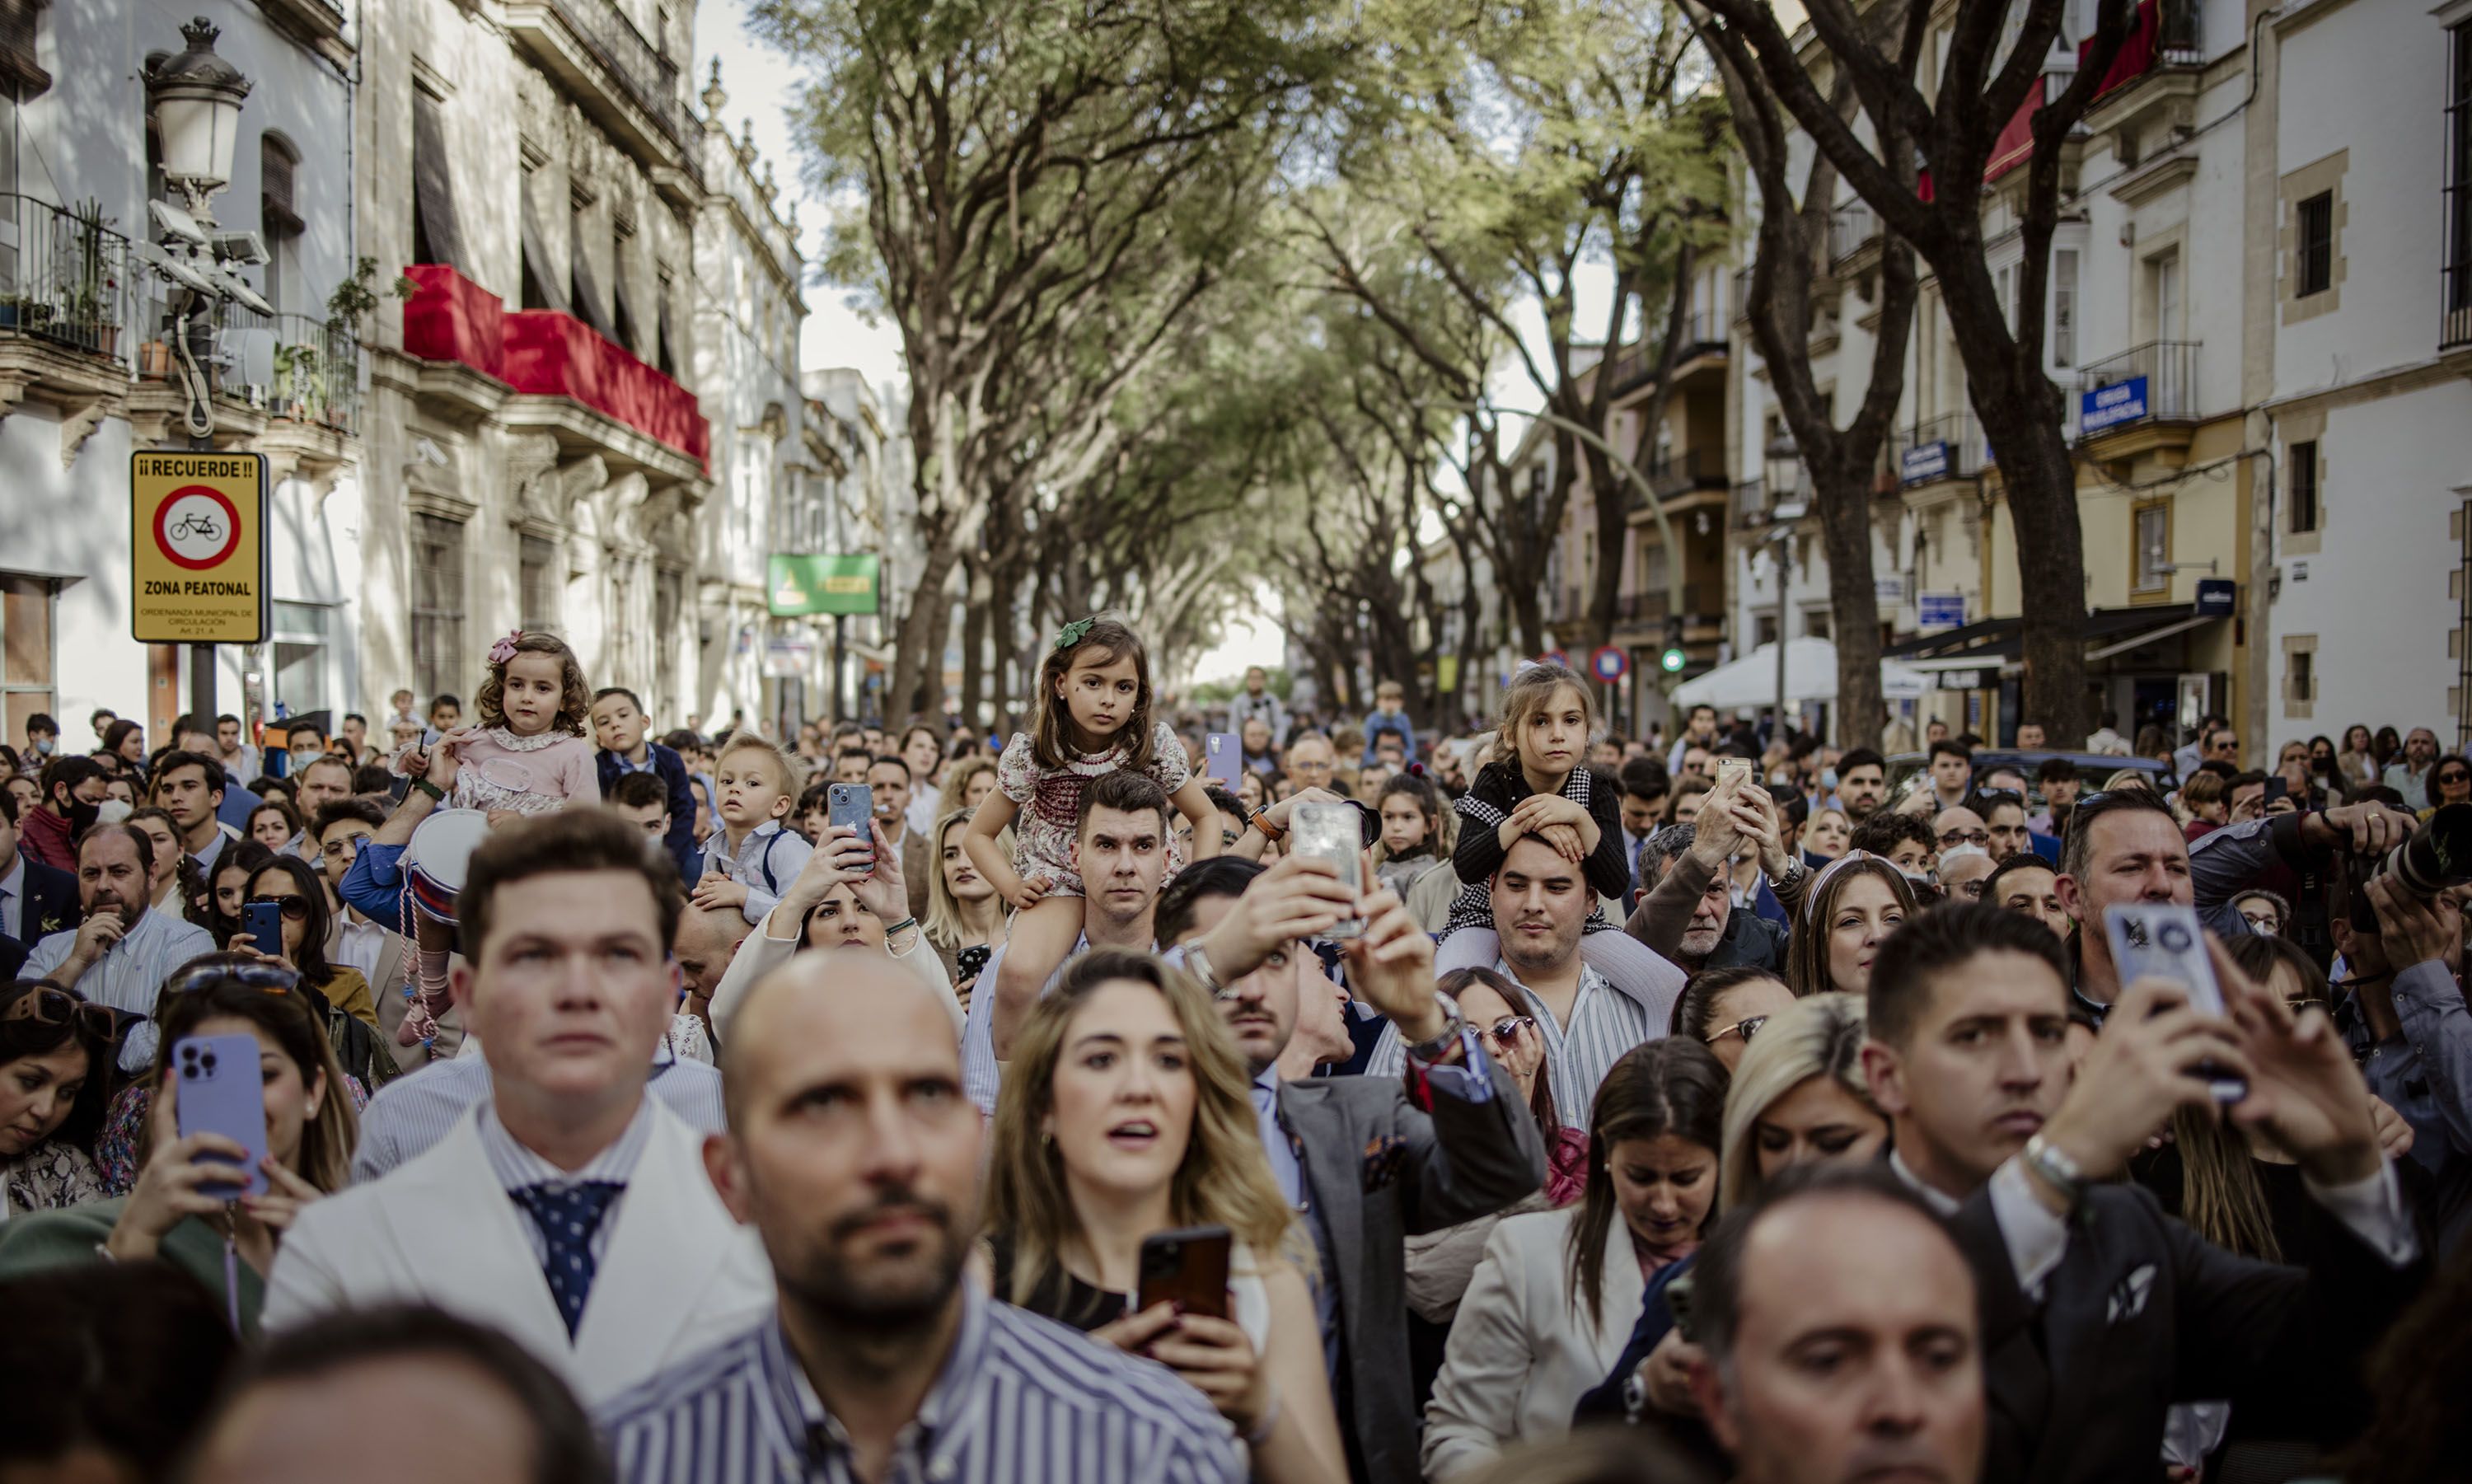 Gente reunida en el centro urbano de Jerez, en una imagen de archivo.